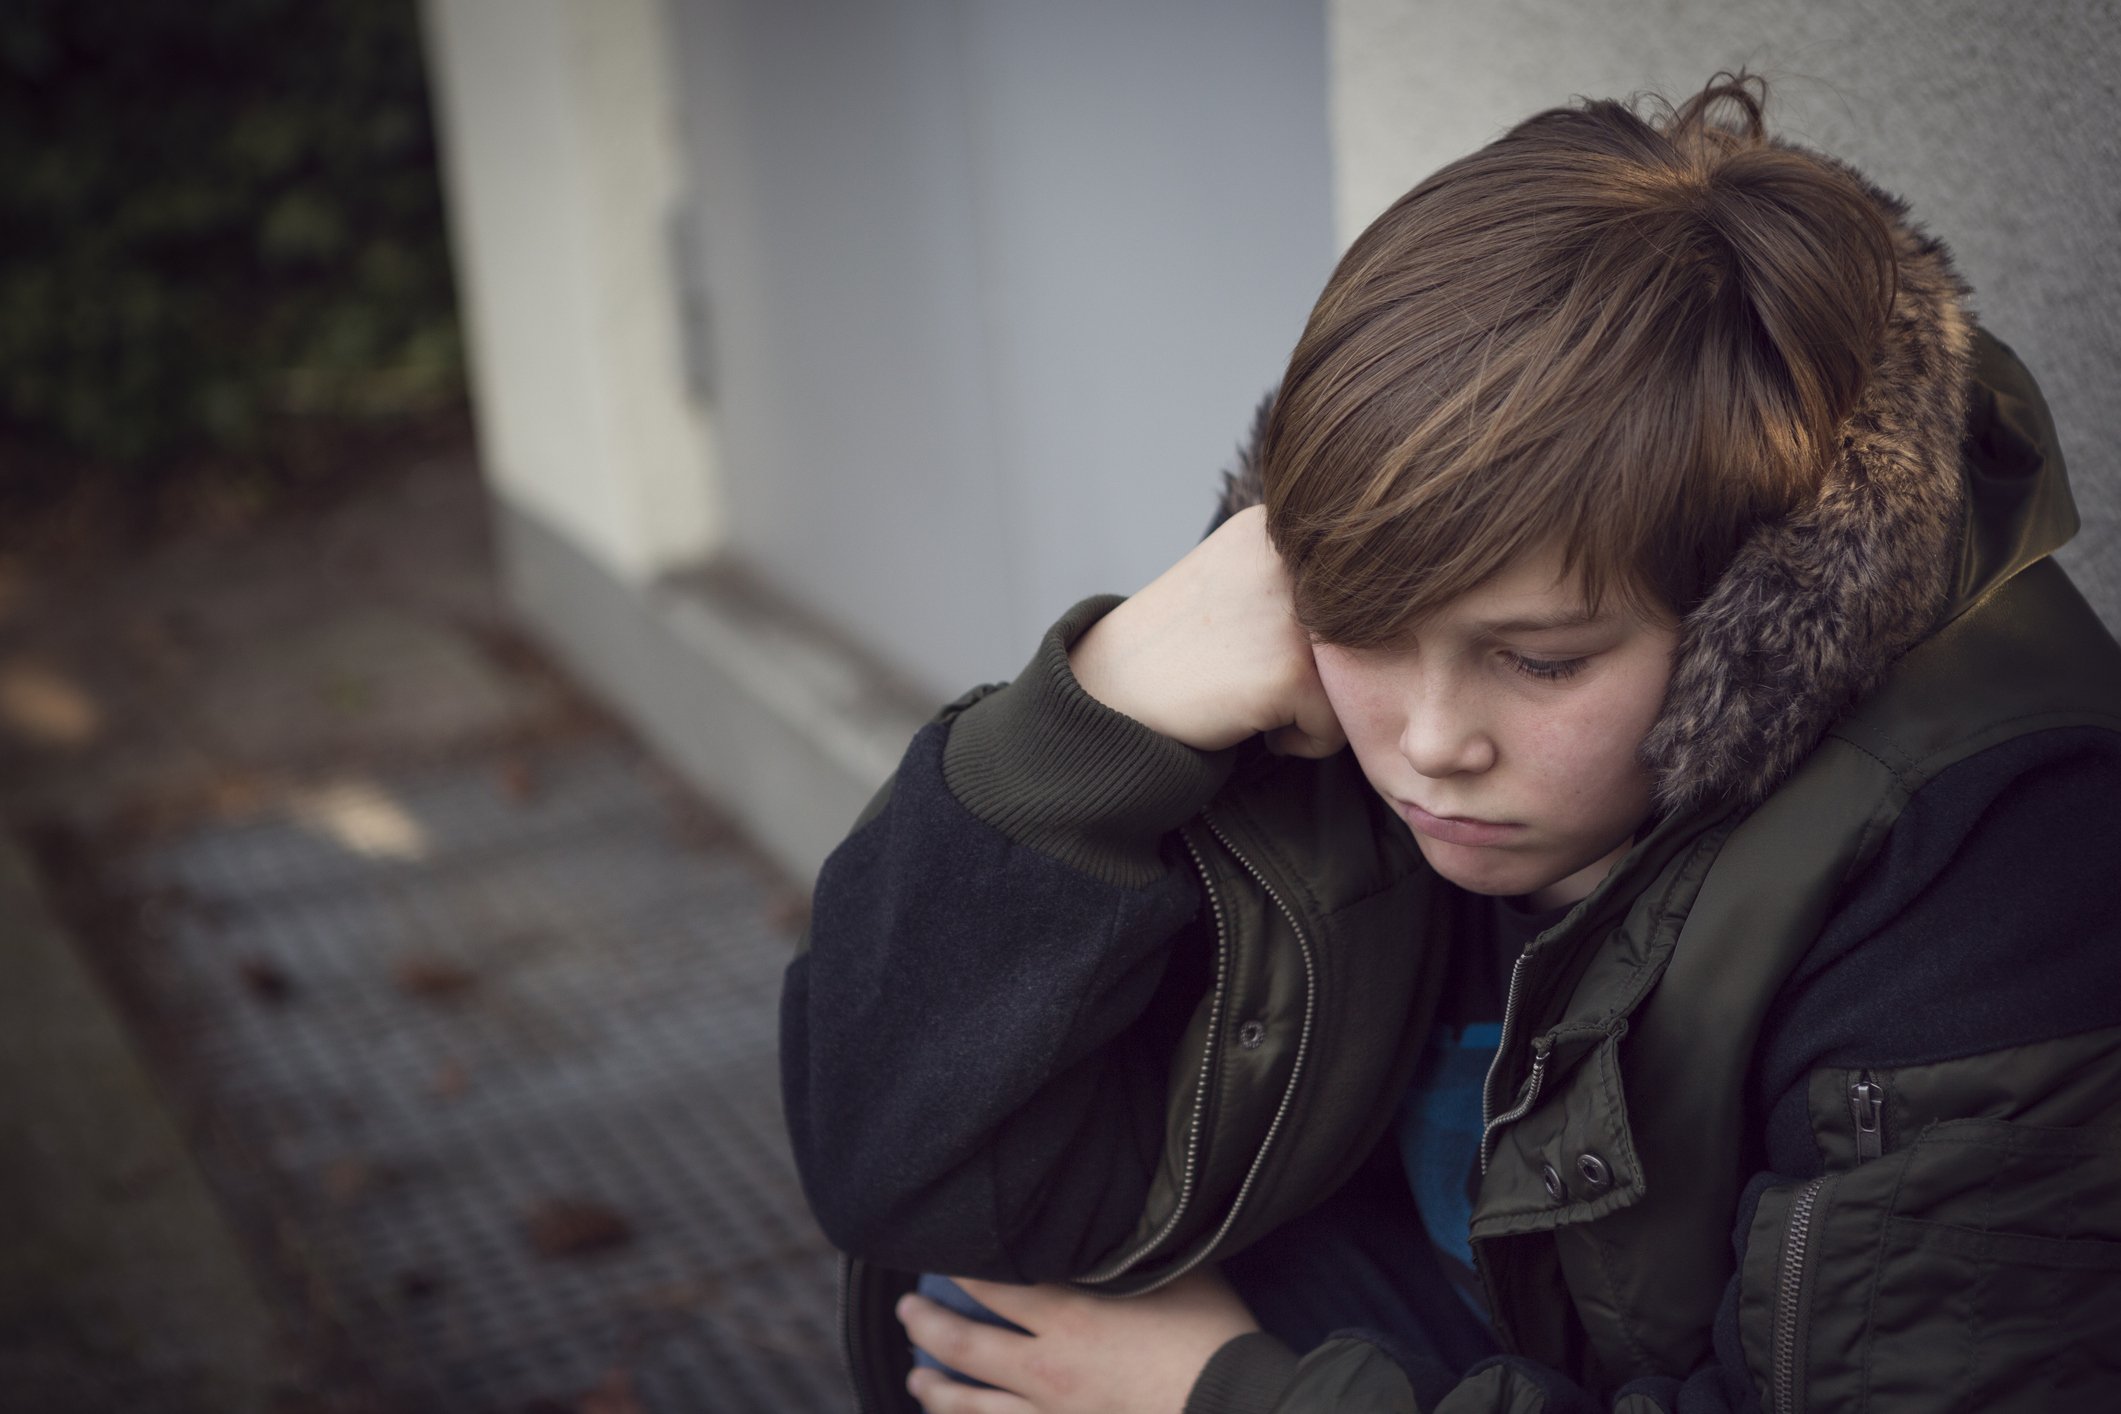 Max kam meist traurig und mit einem tränenden Auge aus der Schule nach Hause. | Quelle: Getty Images